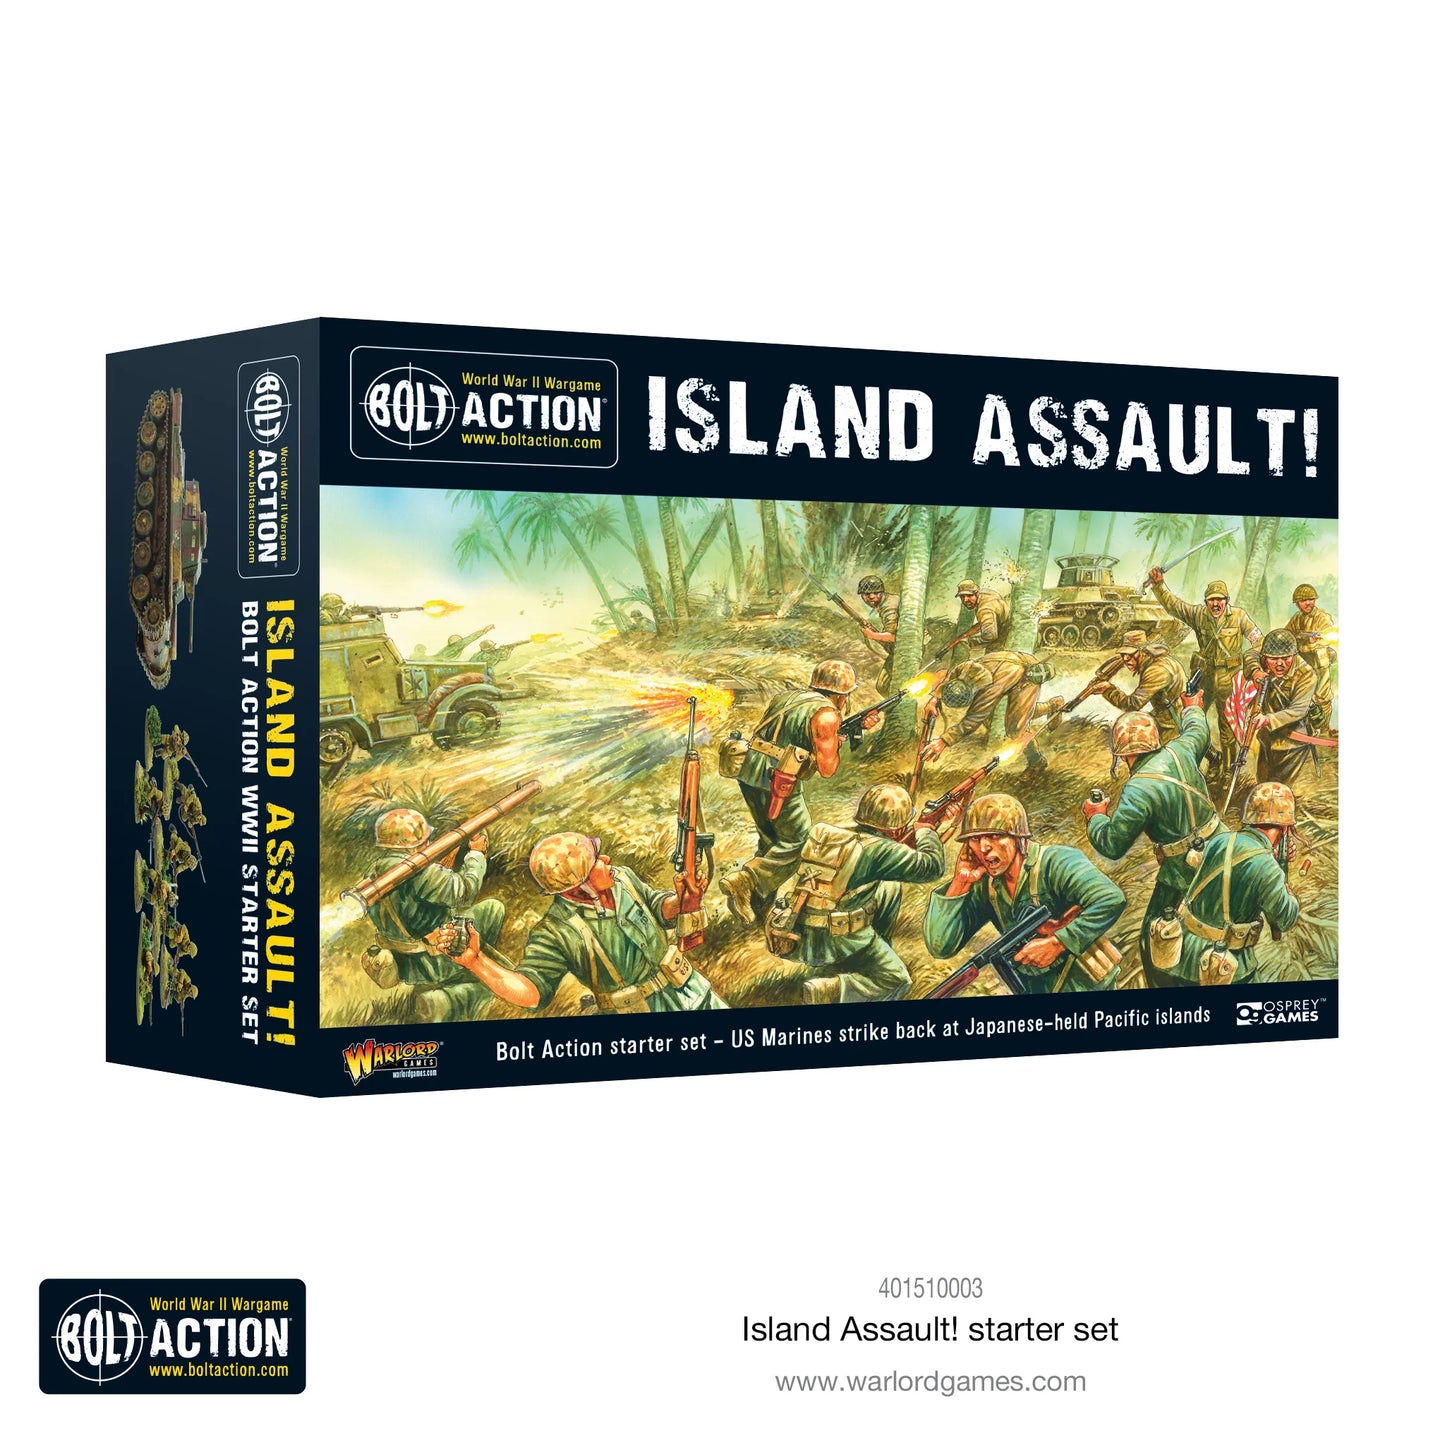 Island assault starter set | Bolt Action